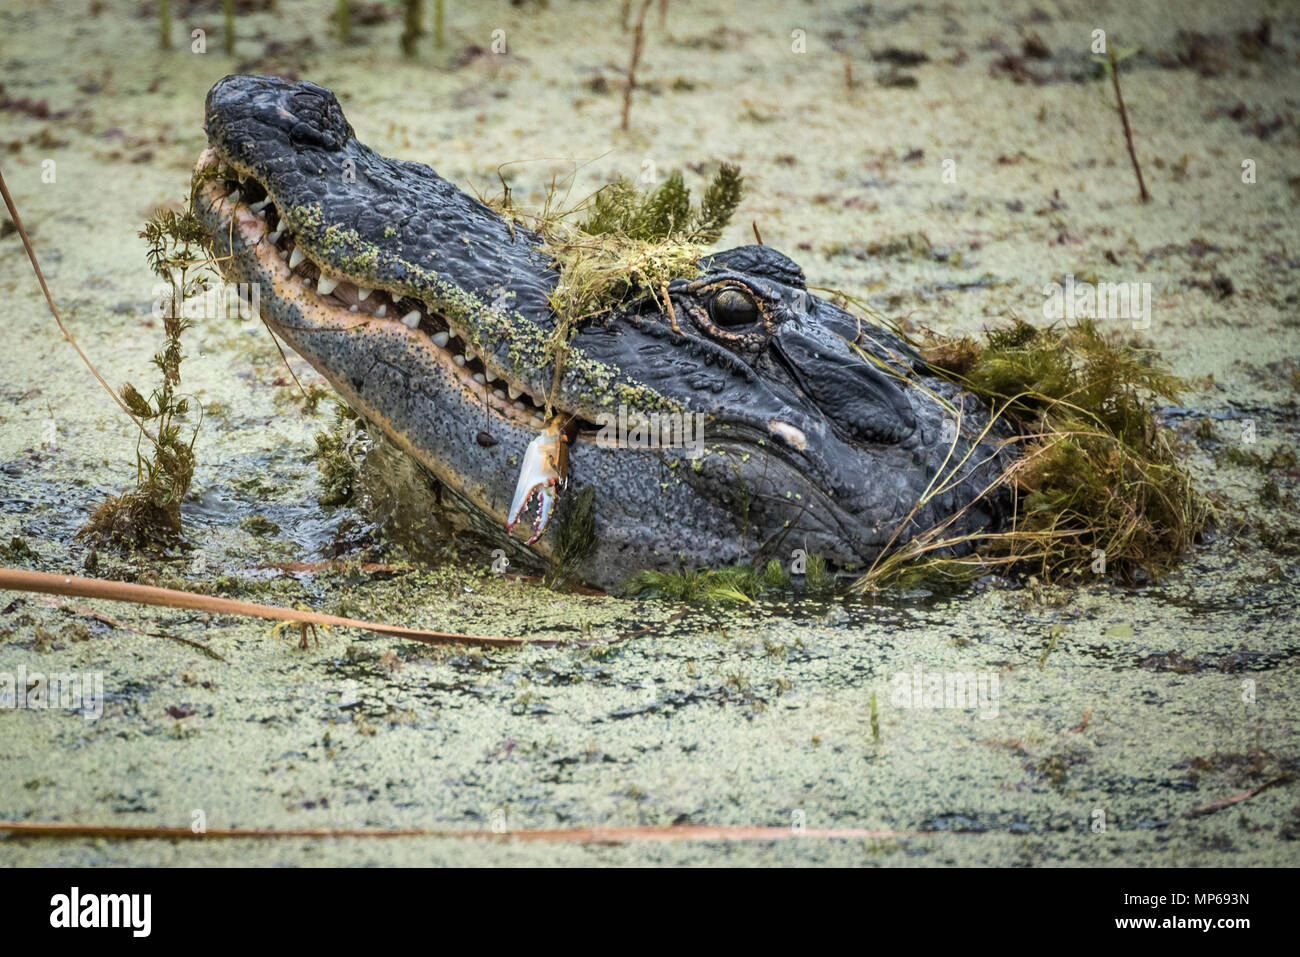 Alligator Floride lève la tête au-dessus de l'eau couvert d'algues de manger un crabe fraîchement pêché dans la rivière Guana à Ponte Vedra Beach le long de la Floride A1A. Banque D'Images